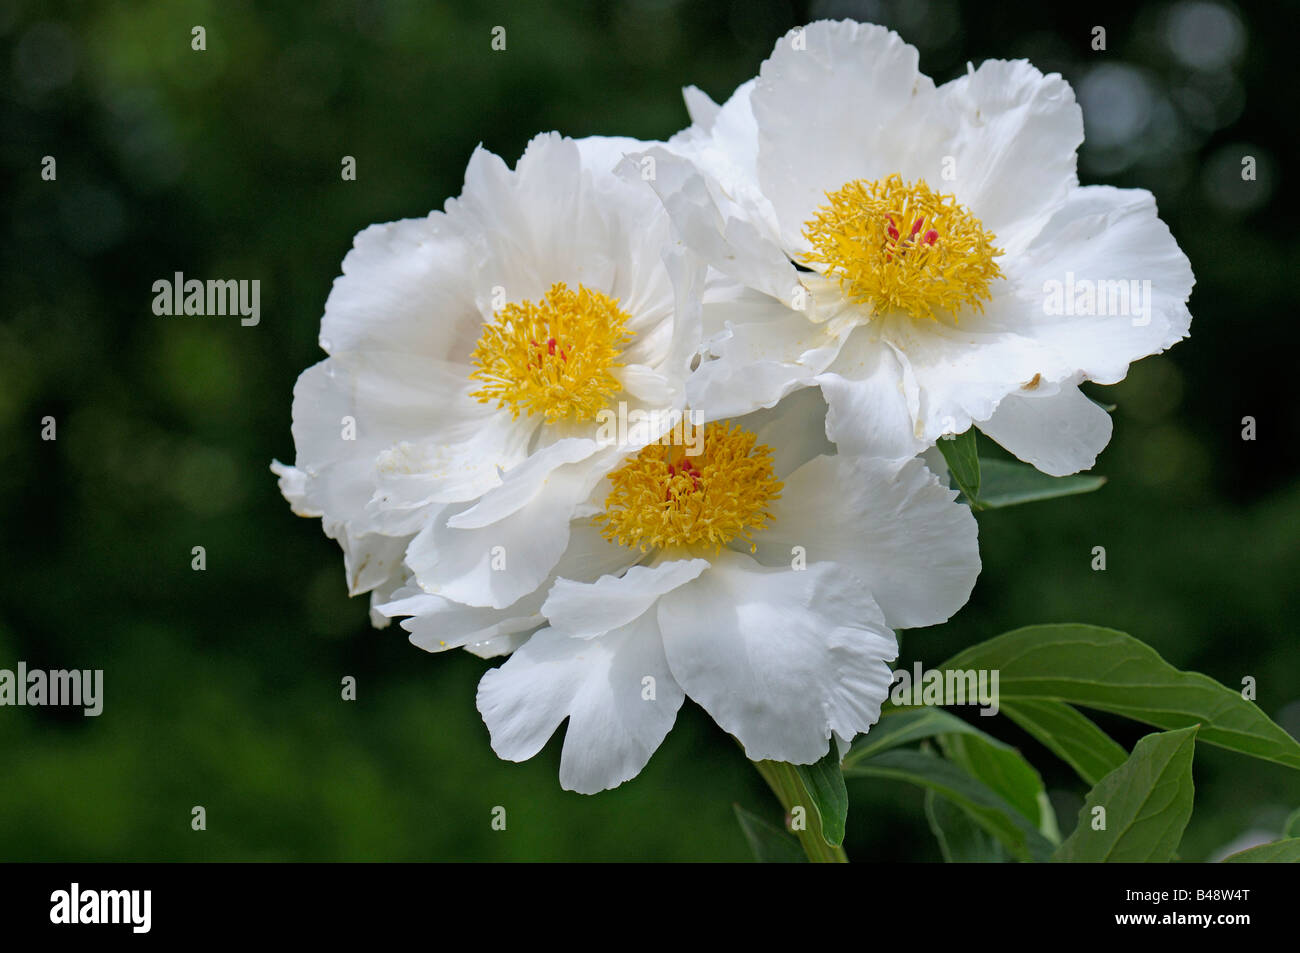 Weiße Paeony, gemeinsamer Garten Paeony chinesische Paeony (Paeonia Lactiflora) Sorte White Wings Blumen Stockfoto